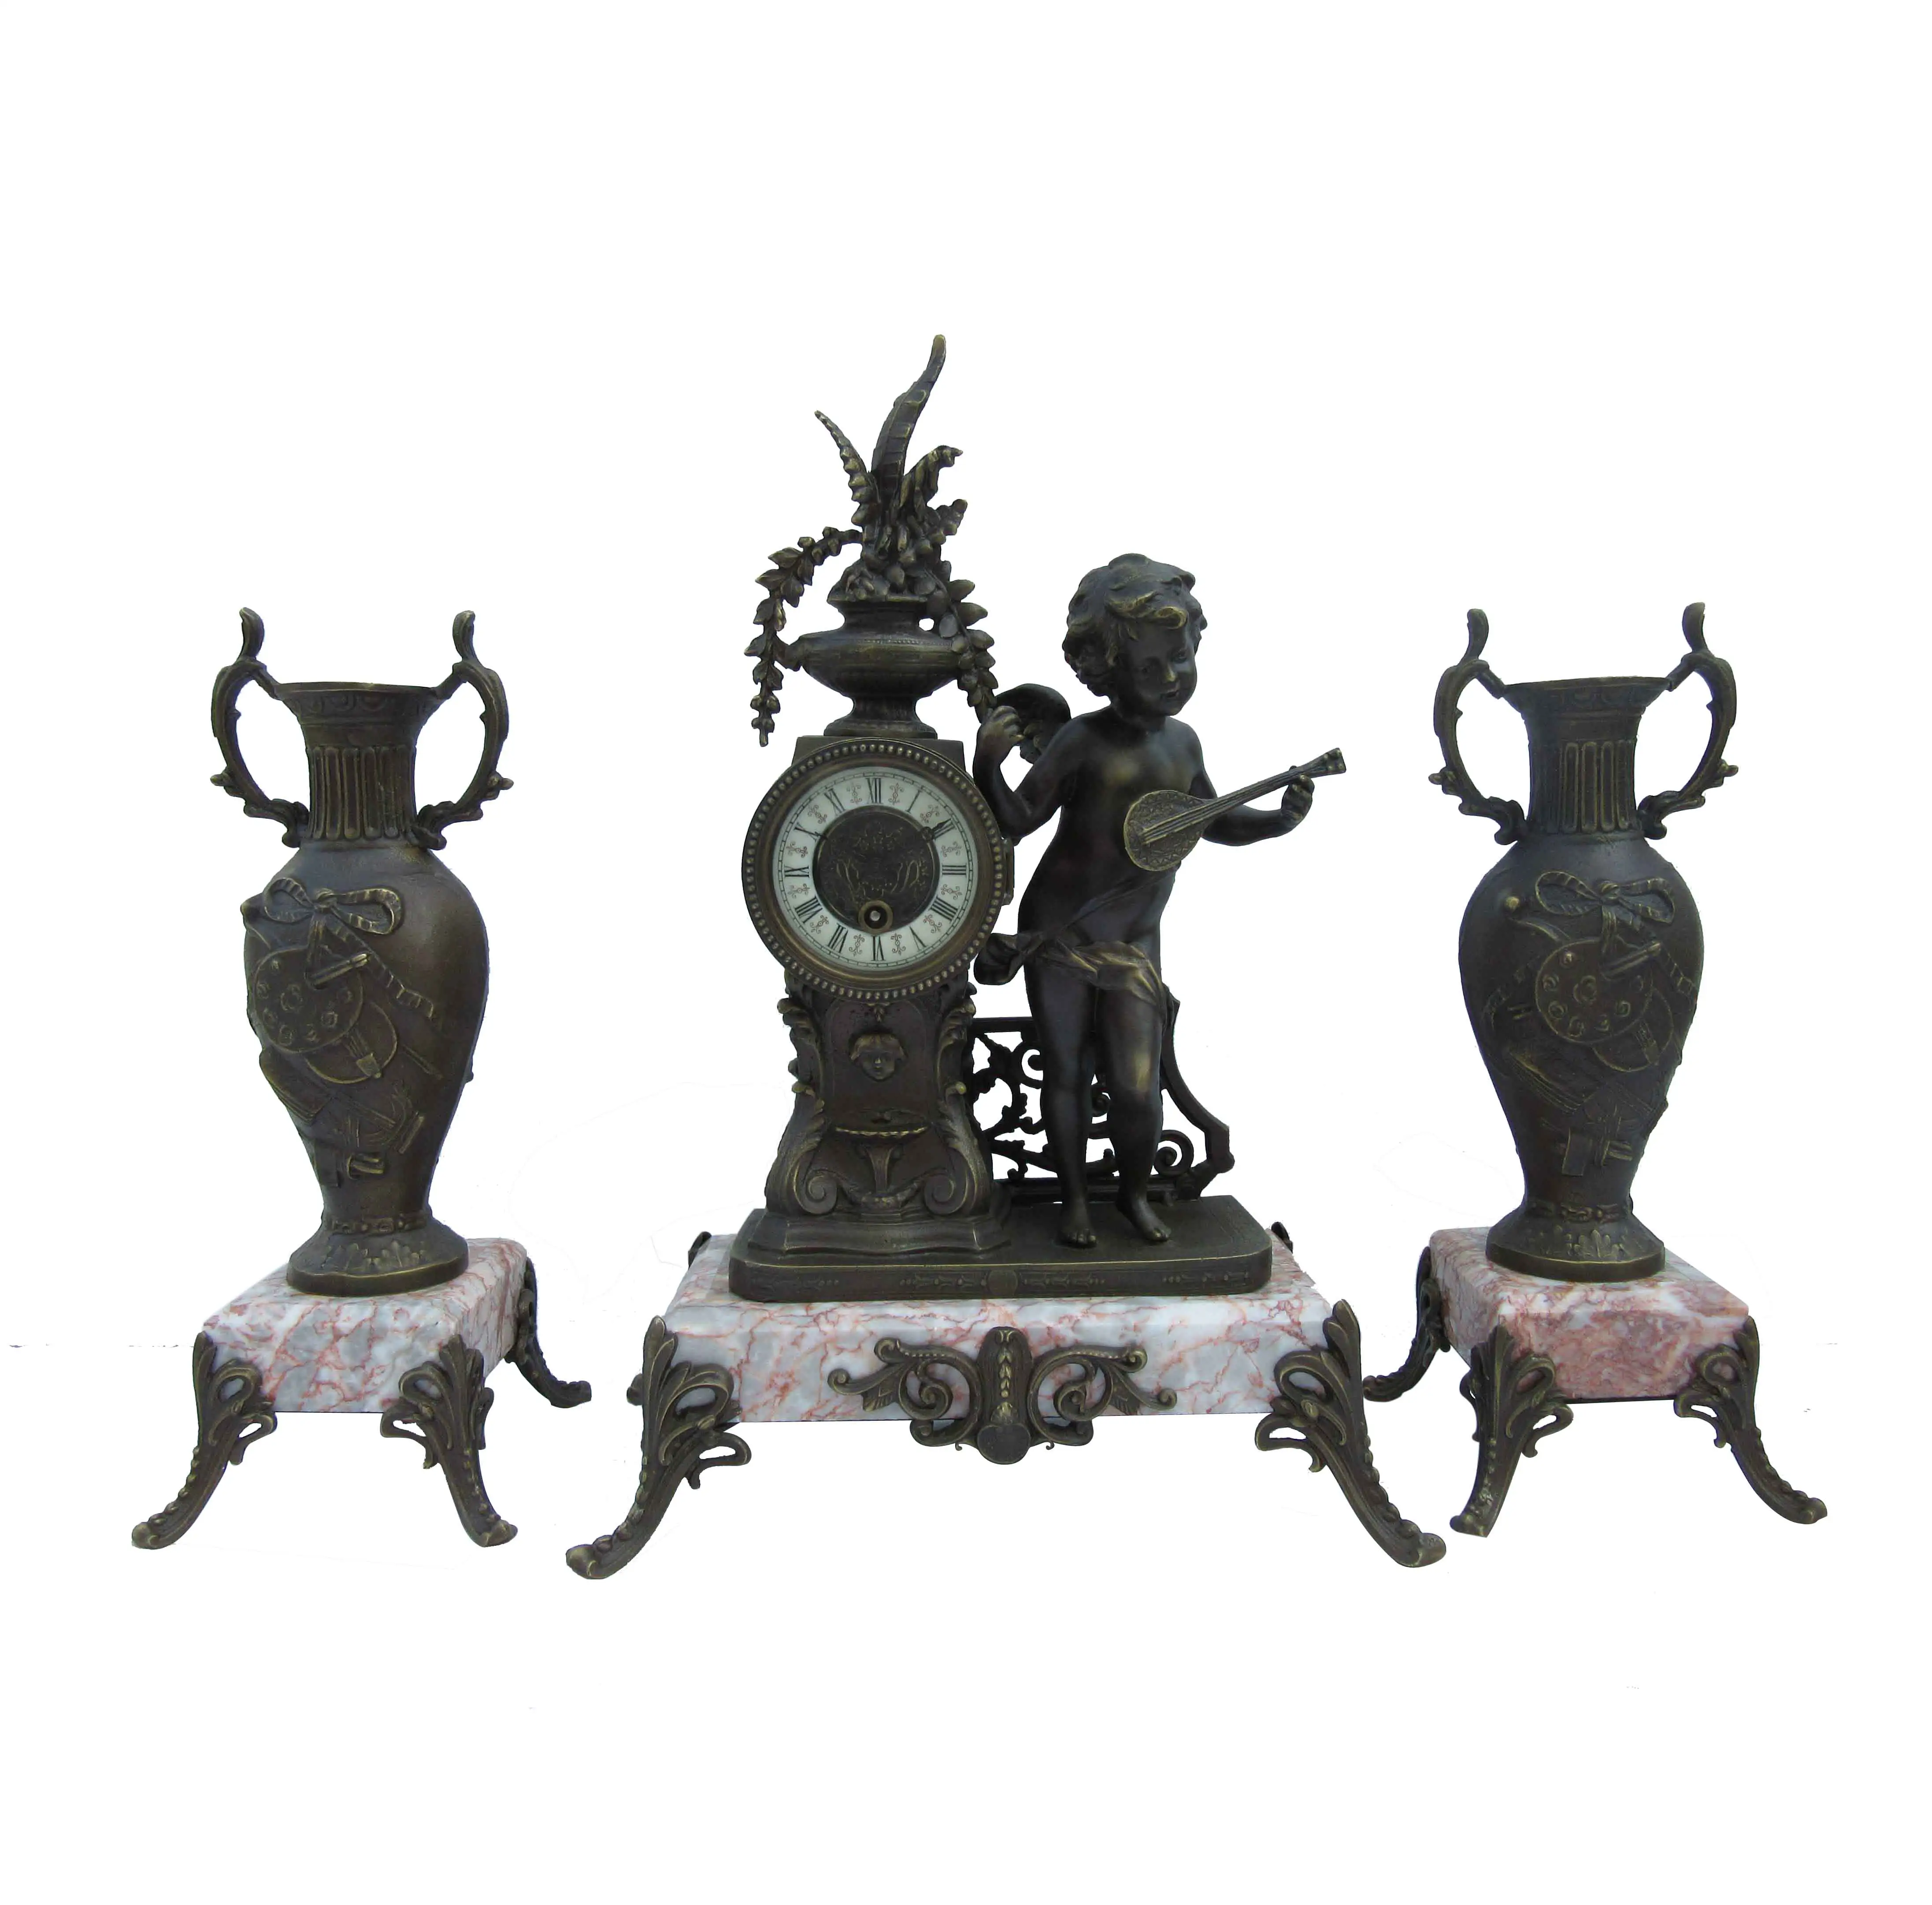 Ensemble d'horloge de cheminée en marbre de style français antique 3 pièces, figurine en laiton moulé "chérubin jouant de la guitare" horloge mécanique et urnes